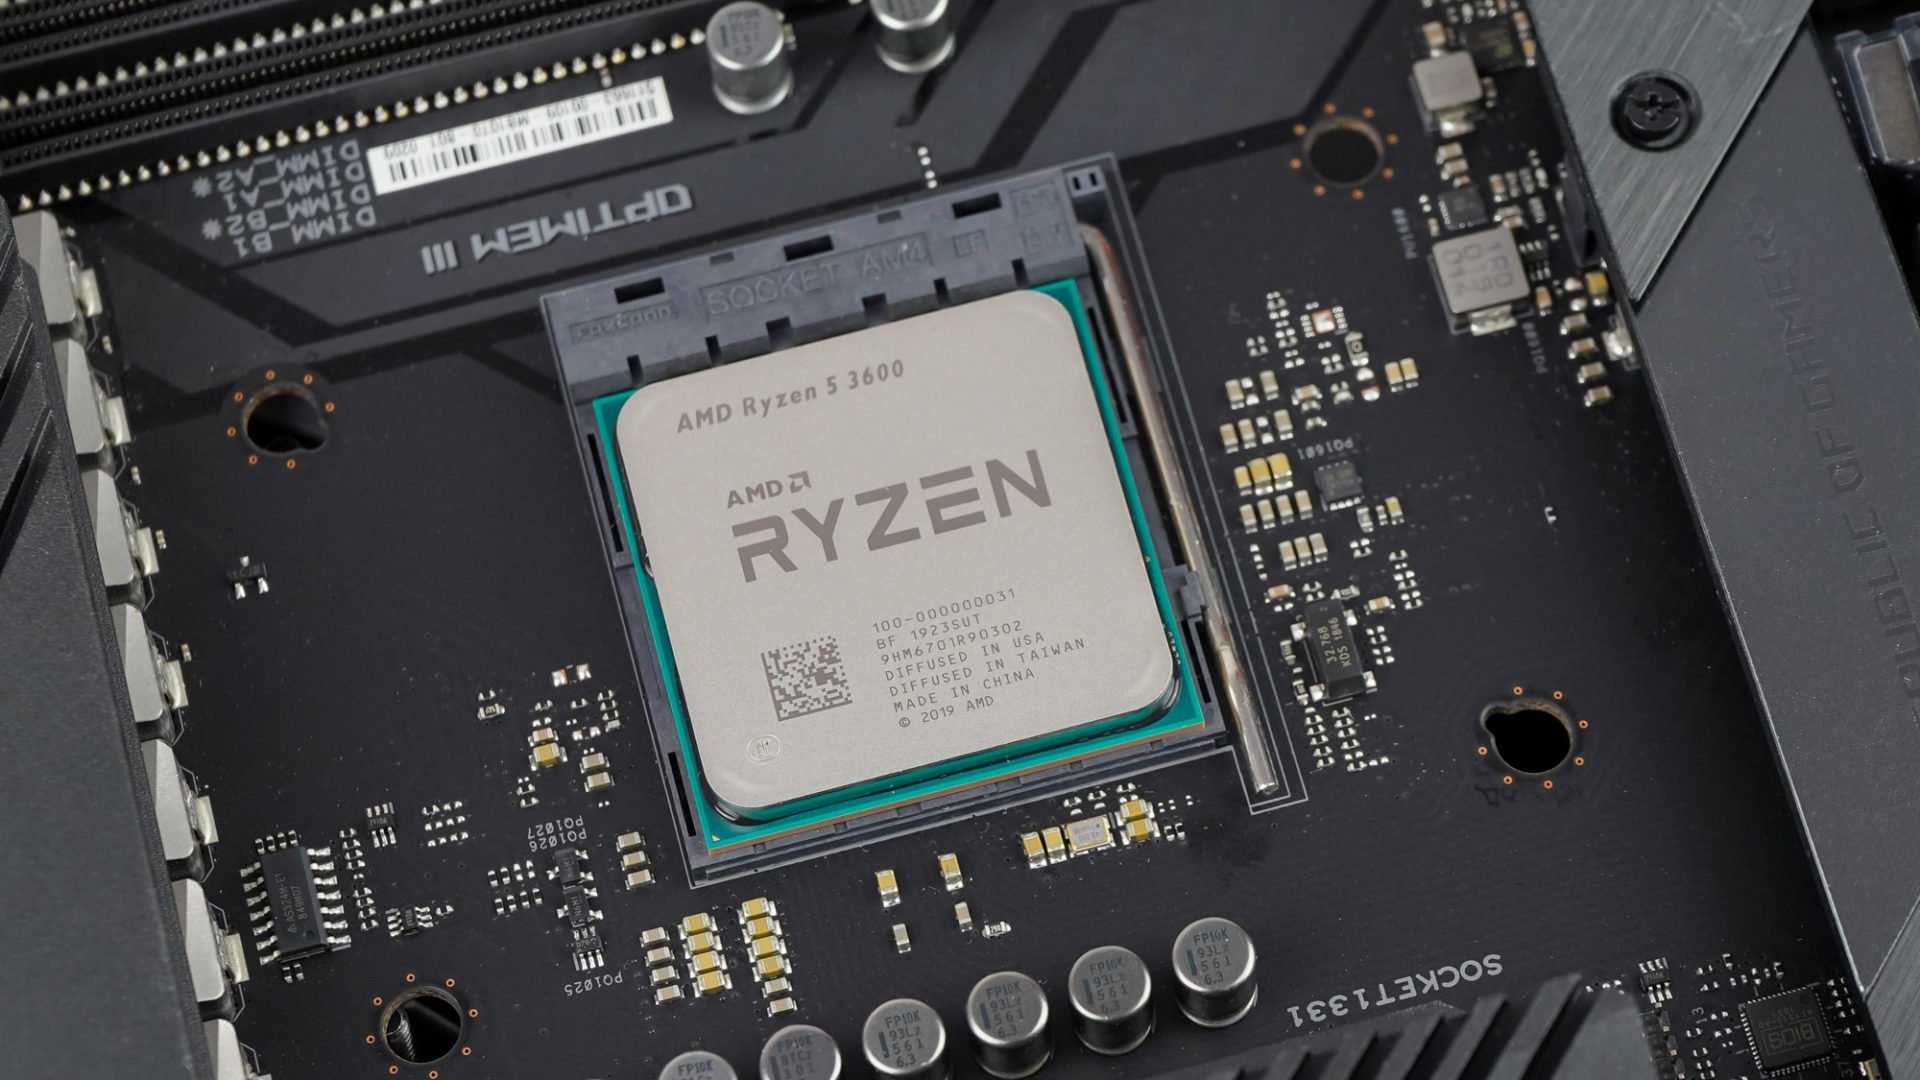 5 3600 сокет. AMD Ryzen 5 3600. AMD Ryzen 5 3600 Socket am4. Ryzen 5 3500. Ryzen 7 4800hs.